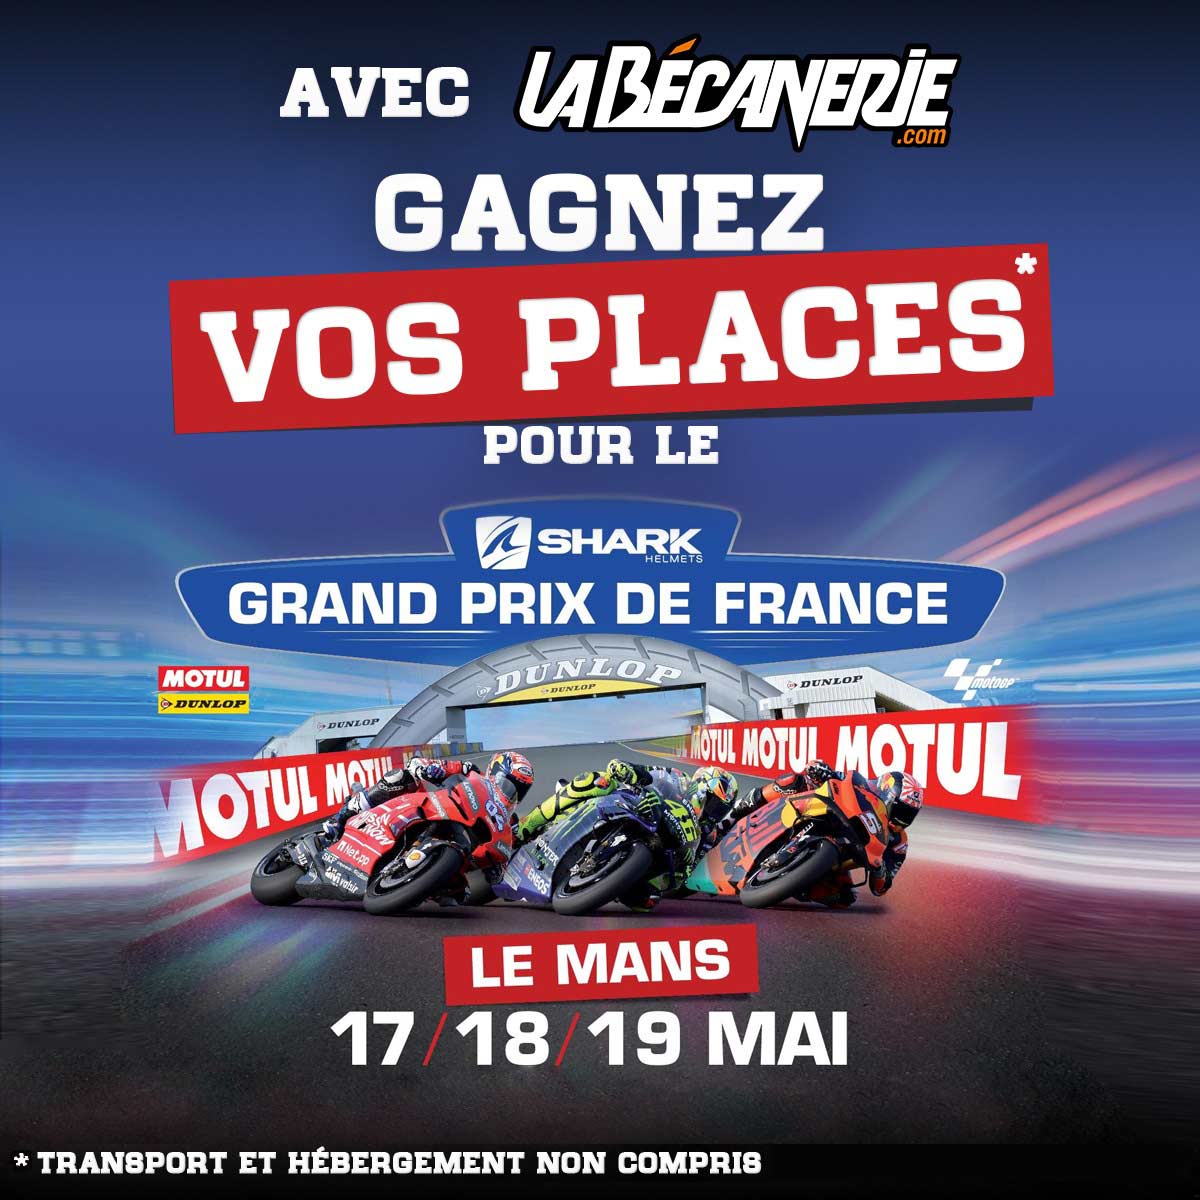 La Bécanerie vous invite au Grand Prix de France (...)